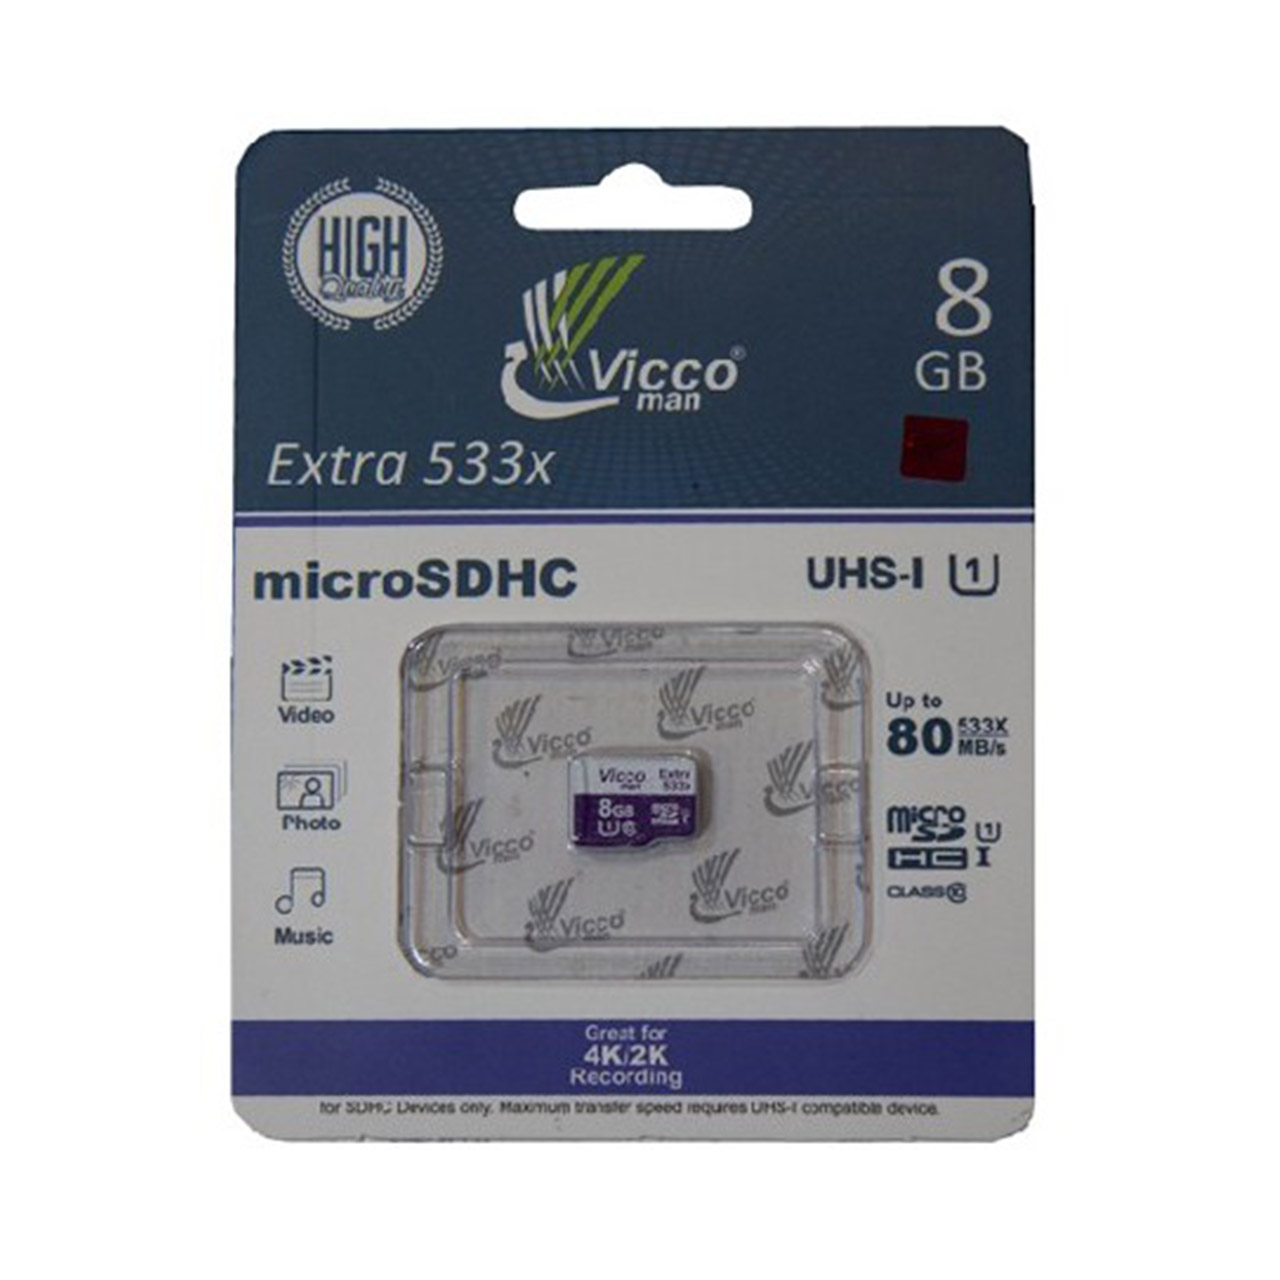 کارت حافظه microSDHC ویکو من مدل Extre 533X ظرفیت 8 گیگابایت